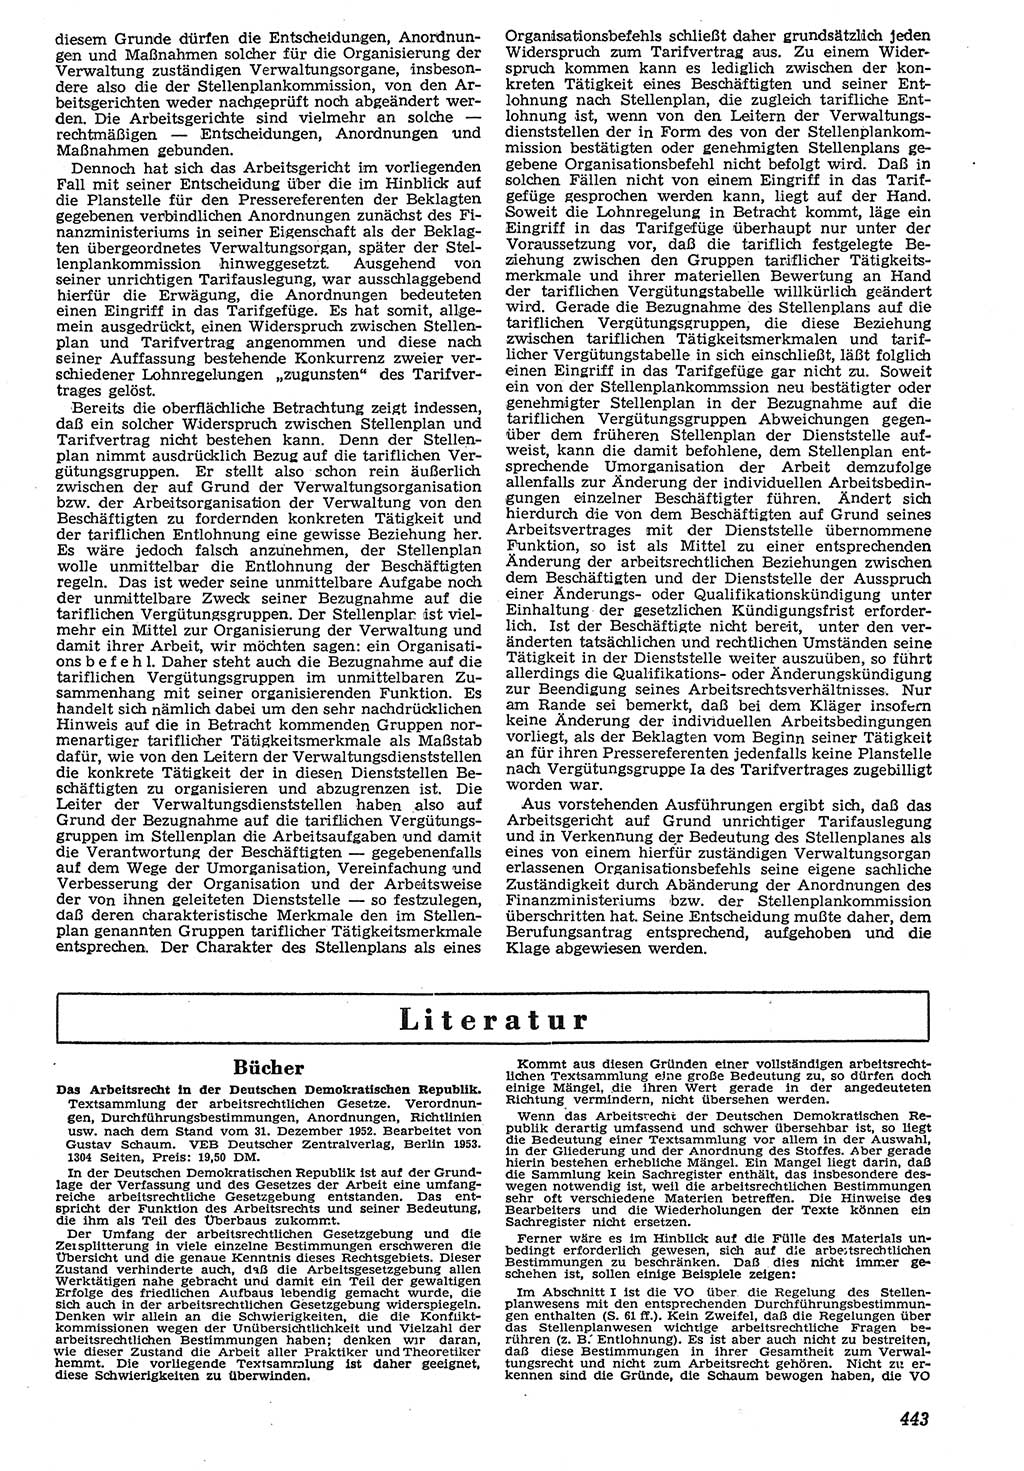 Neue Justiz (NJ), Zeitschrift für Recht und Rechtswissenschaft [Deutsche Demokratische Republik (DDR)], 7. Jahrgang 1953, Seite 443 (NJ DDR 1953, S. 443)